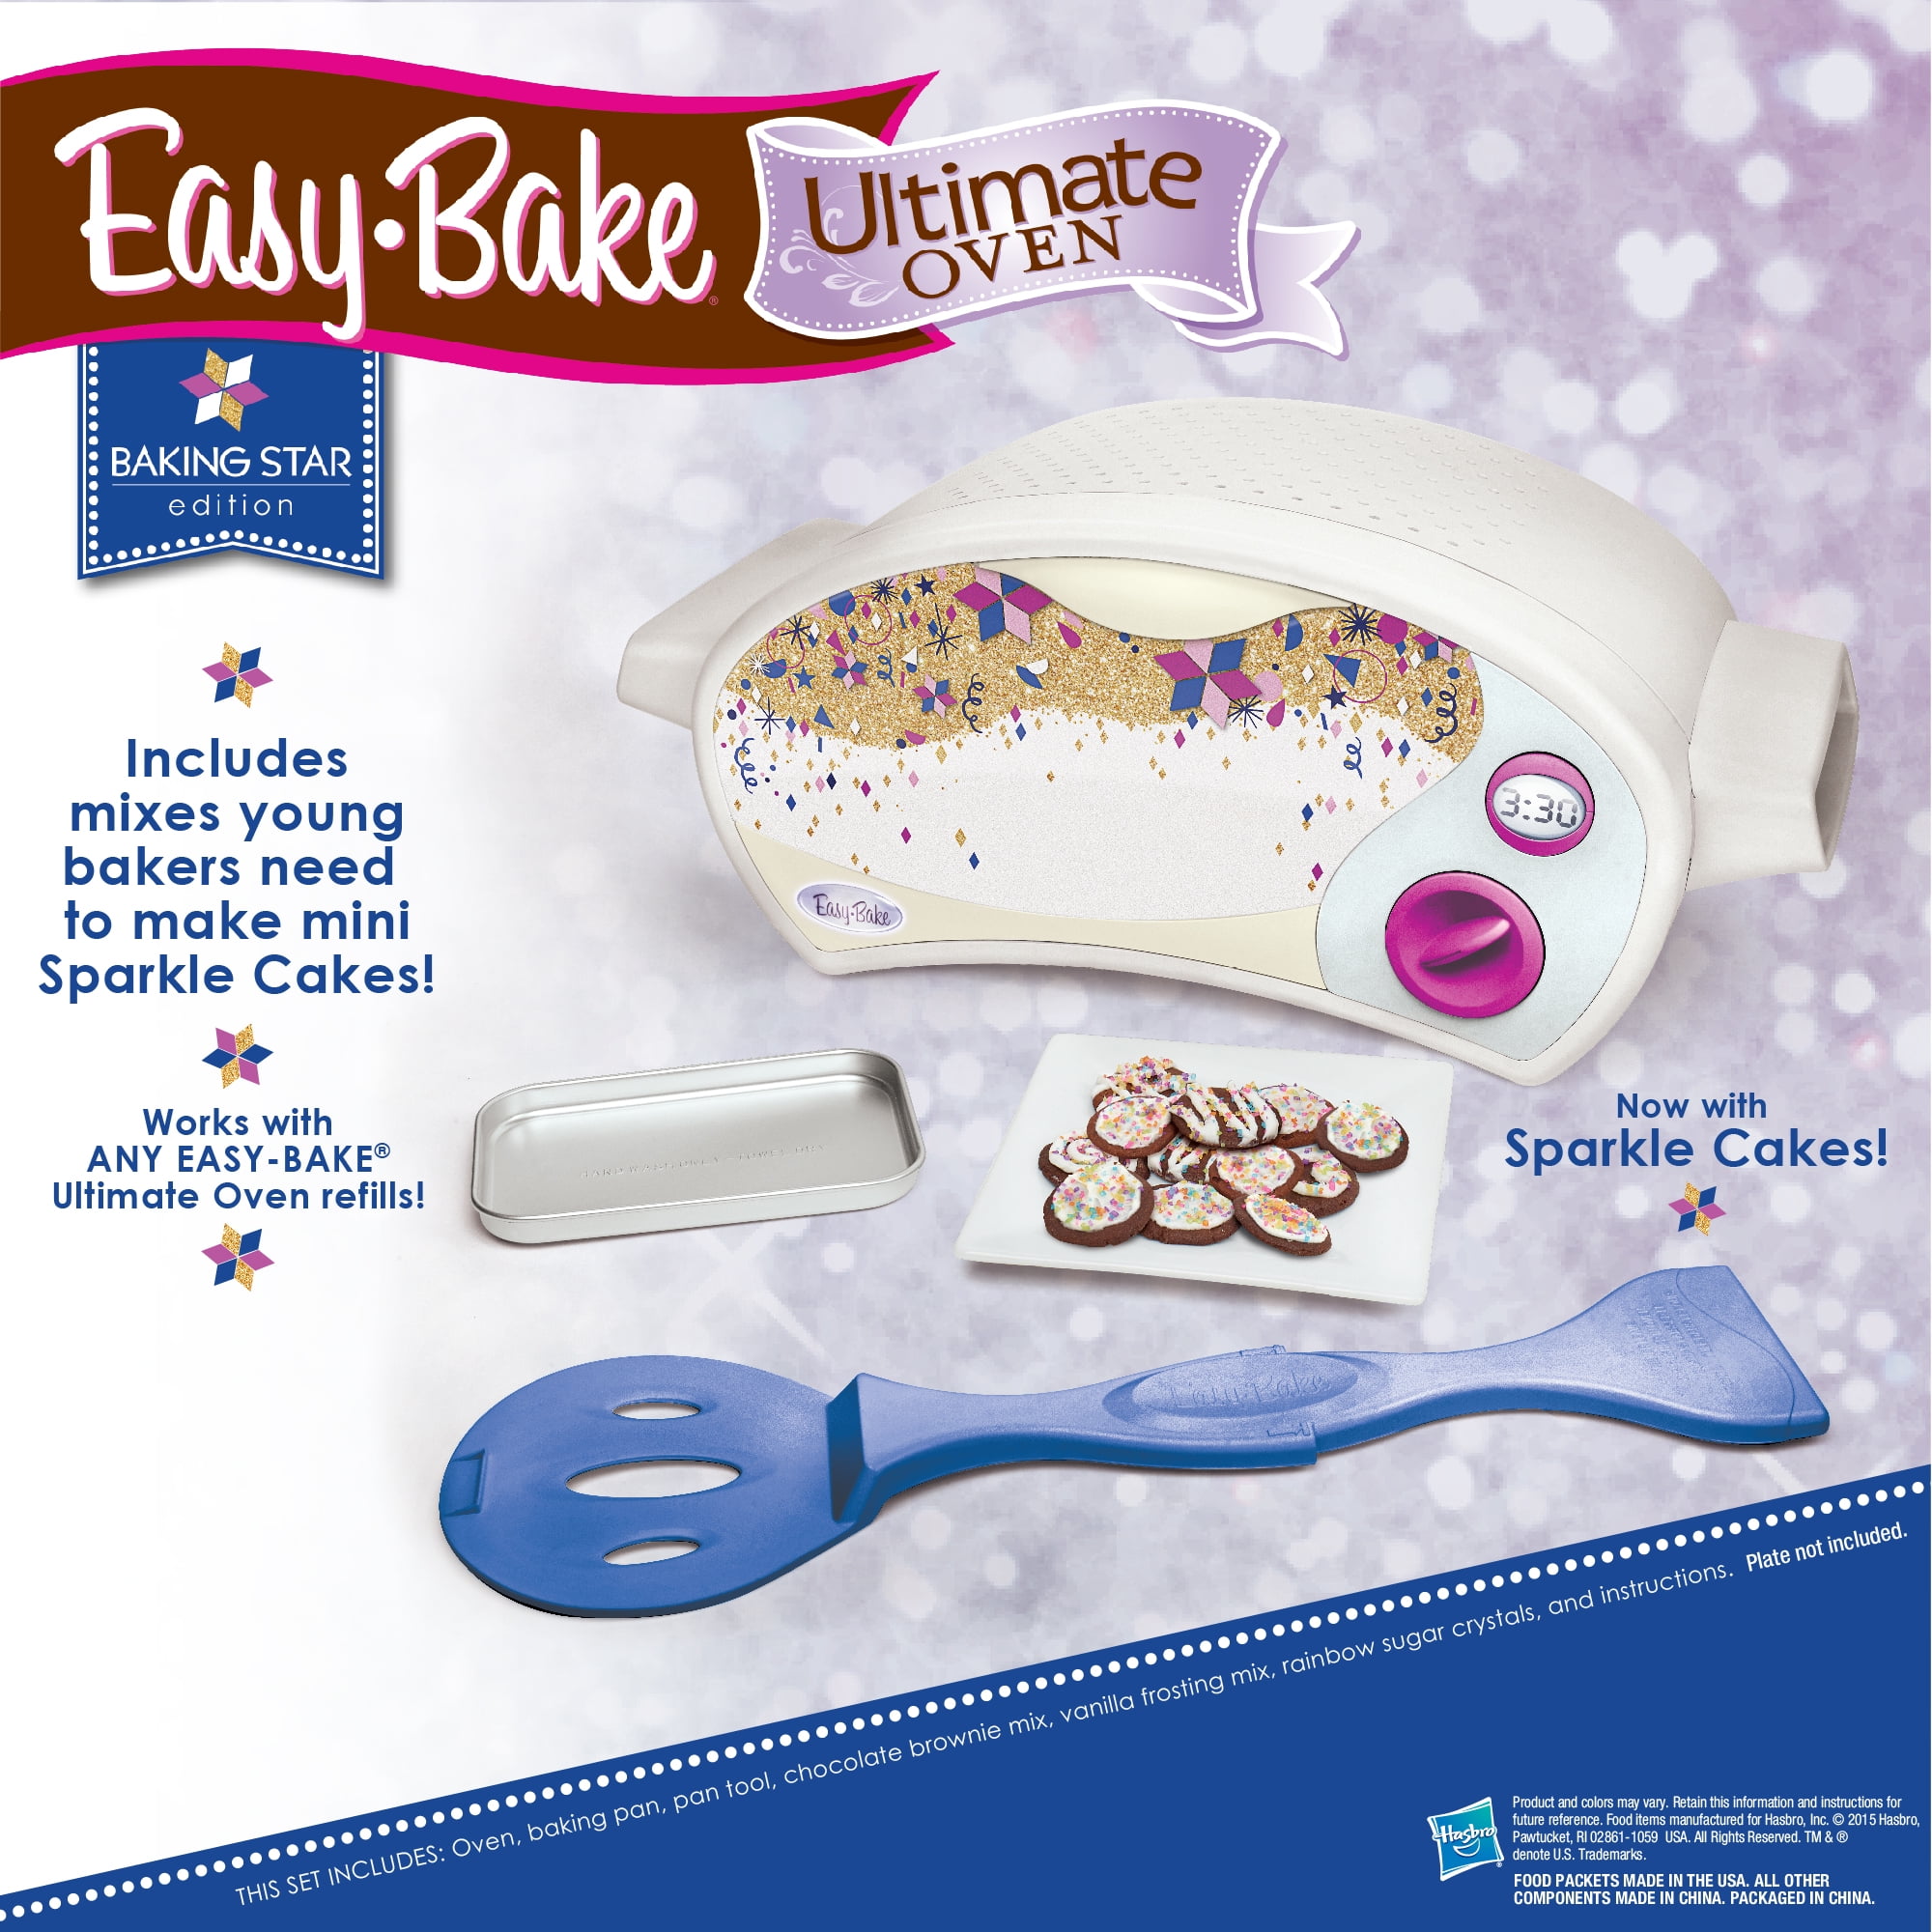 Easy-Bake Oven 2020 — Robert St. John